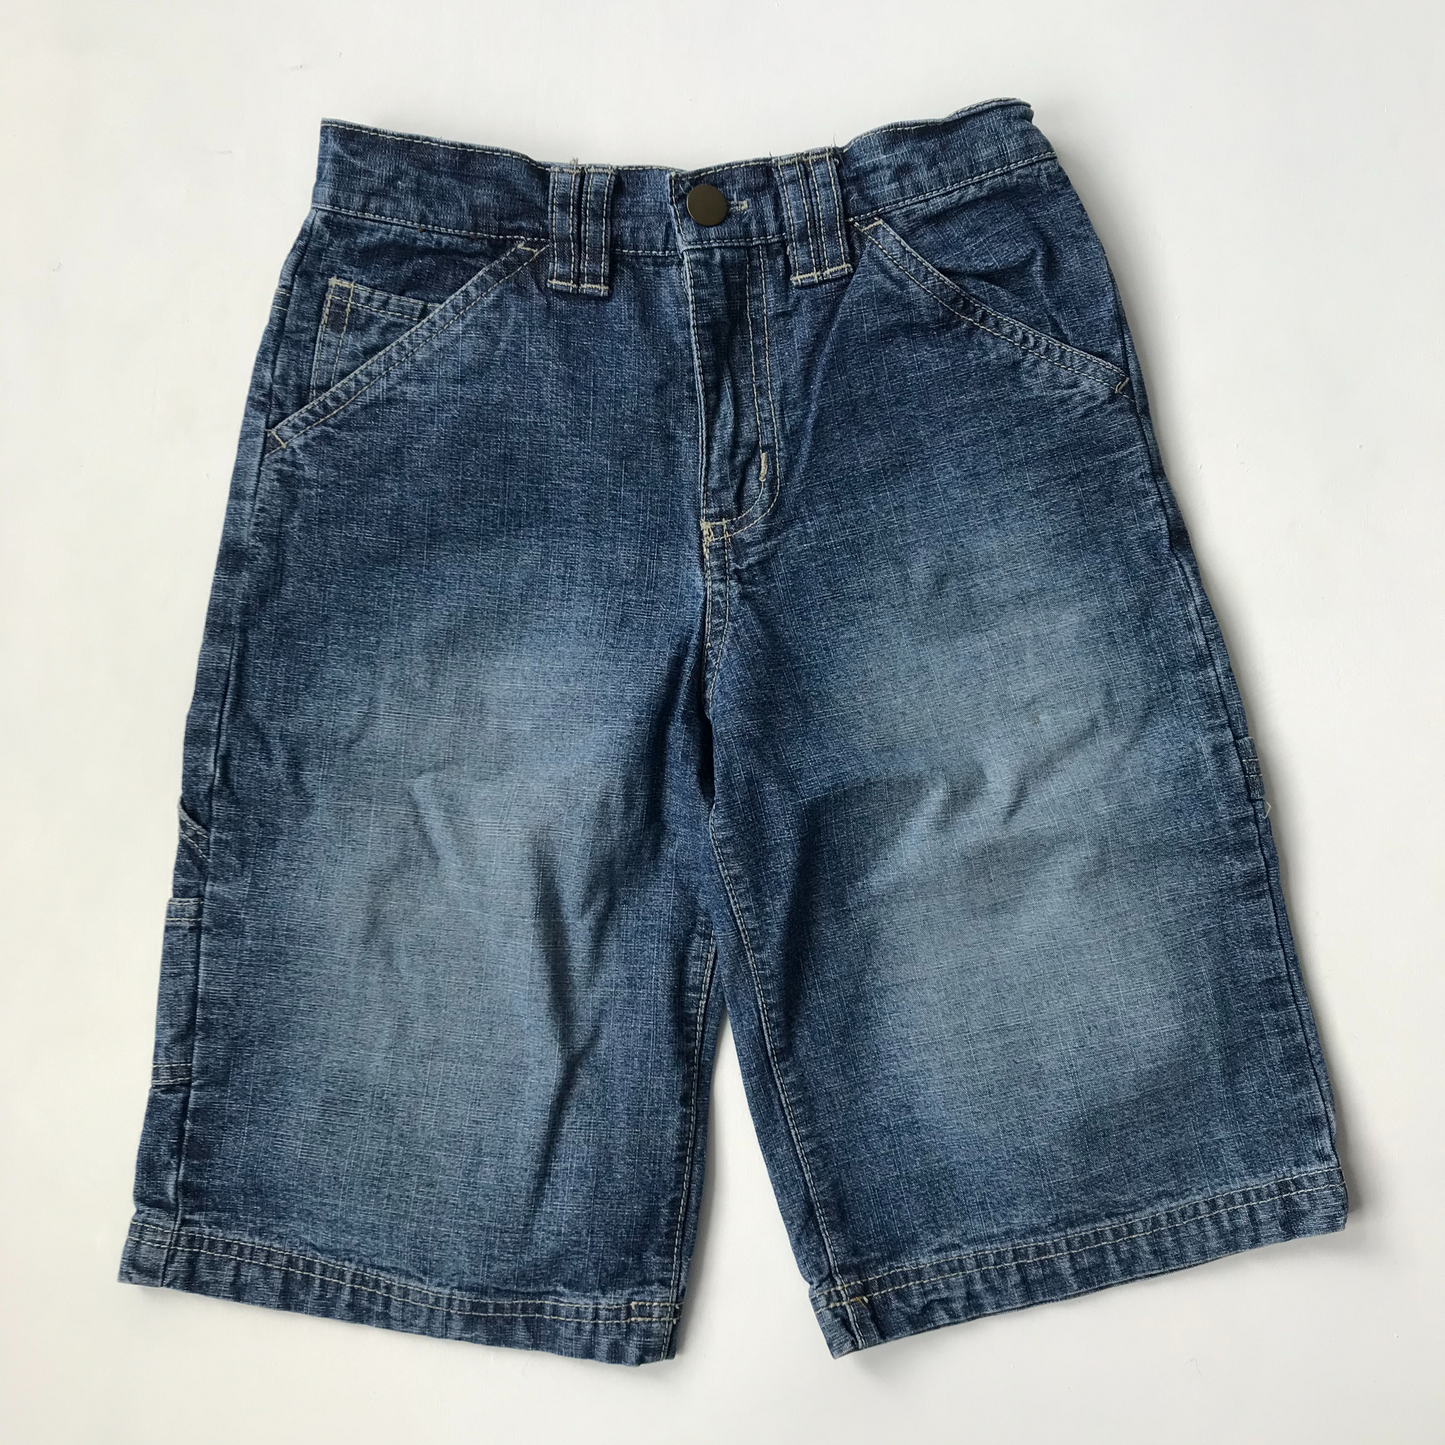 Shorts - Denim - Age 8